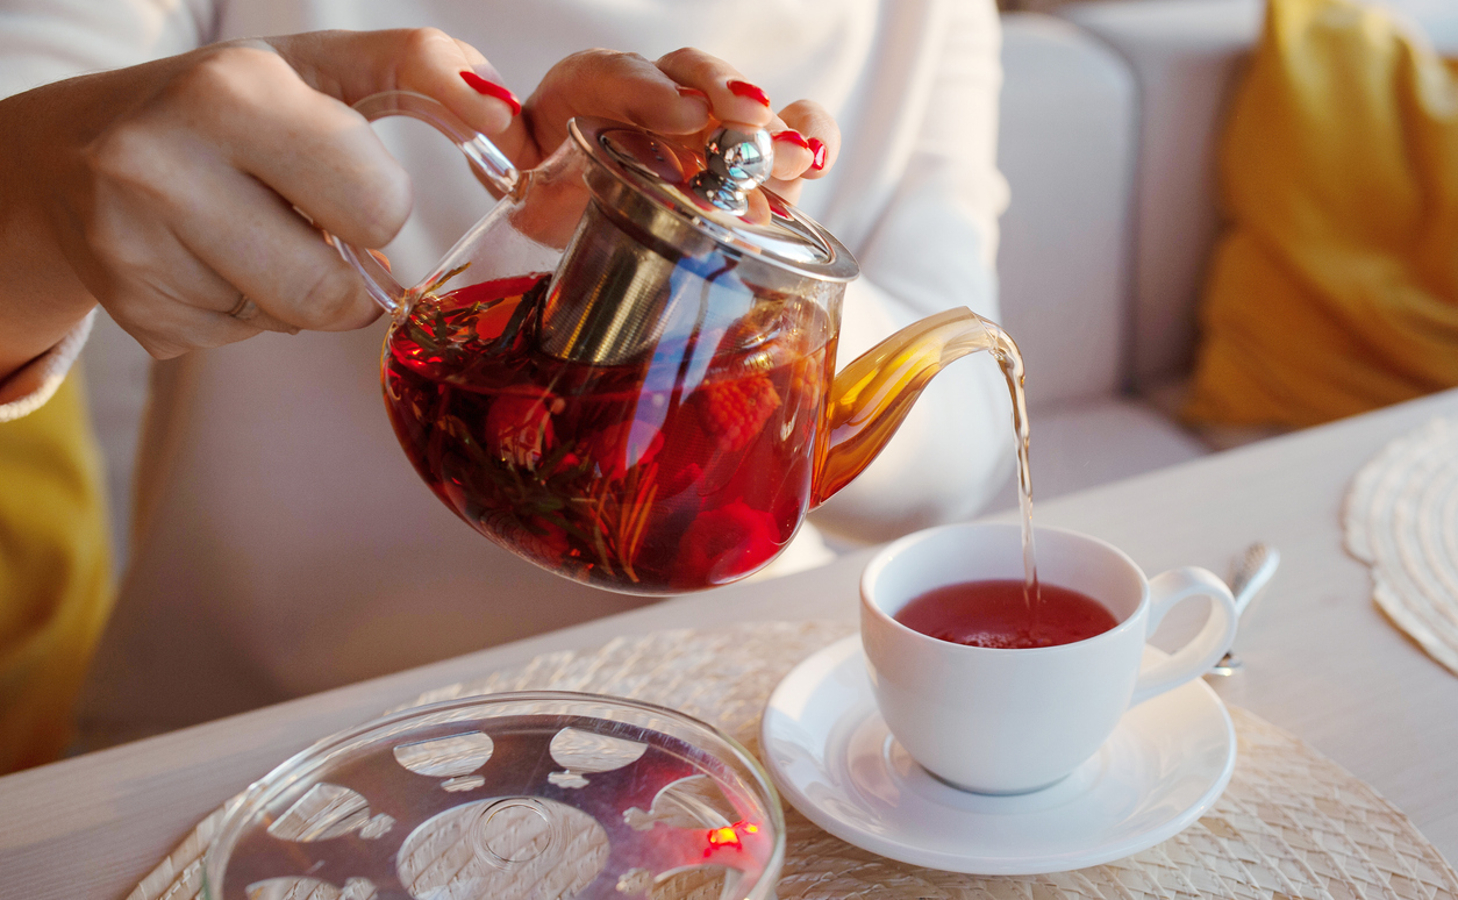 Chá oolong é um tipo de chá parcialmente oxidado, com características que se situam entre o chá verde e o chá preto